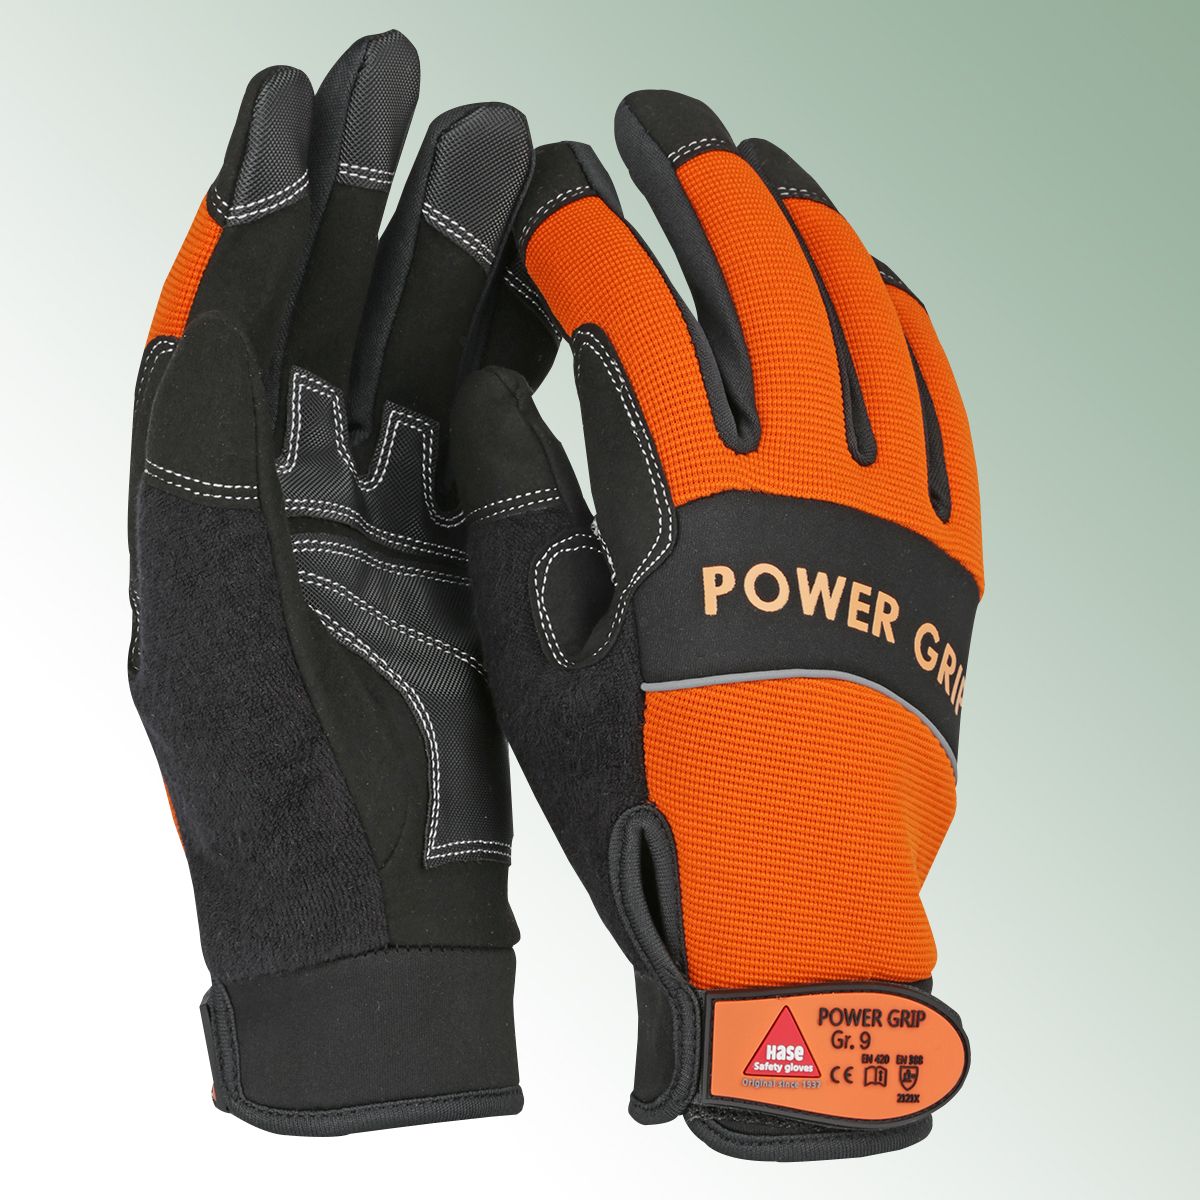 Outdoor glove size 11 Neoprene